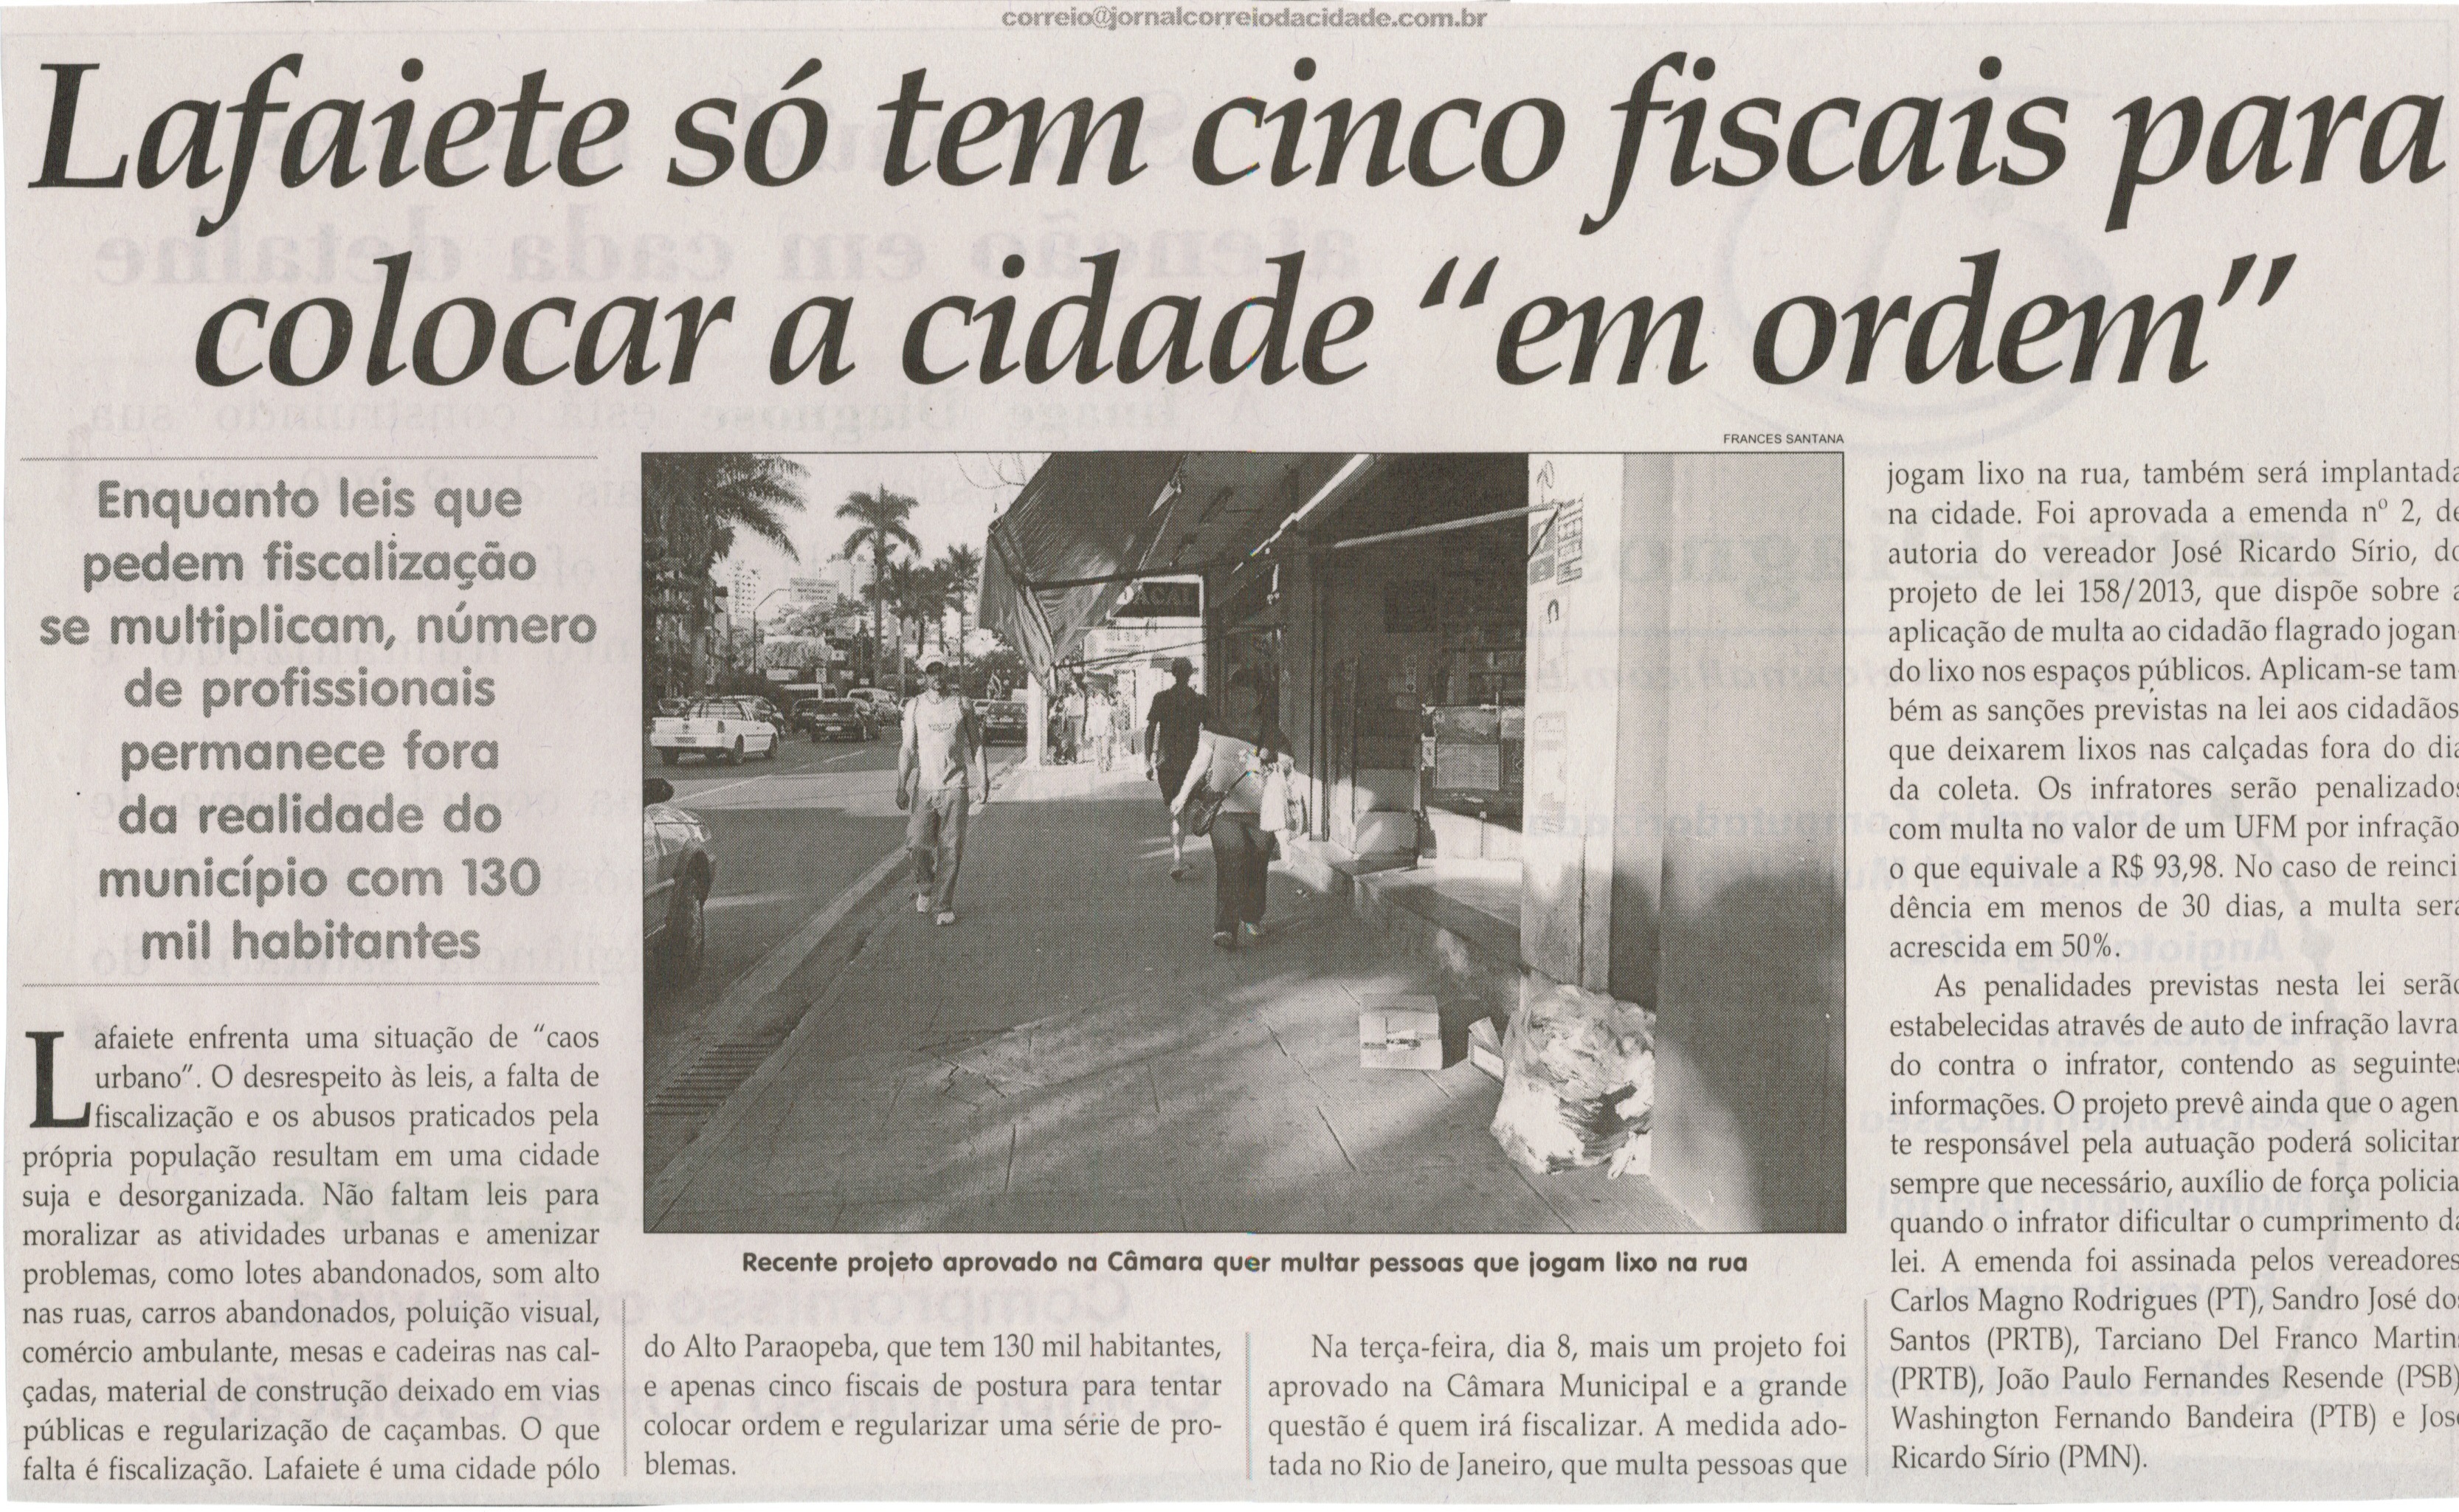 Lafaiete só tem cinco fiscais para colocar a cidade "em ordem". Jornal Correio da Cidade, Conselheiro Lafaiete, 18 mar. 2014, p. 4.